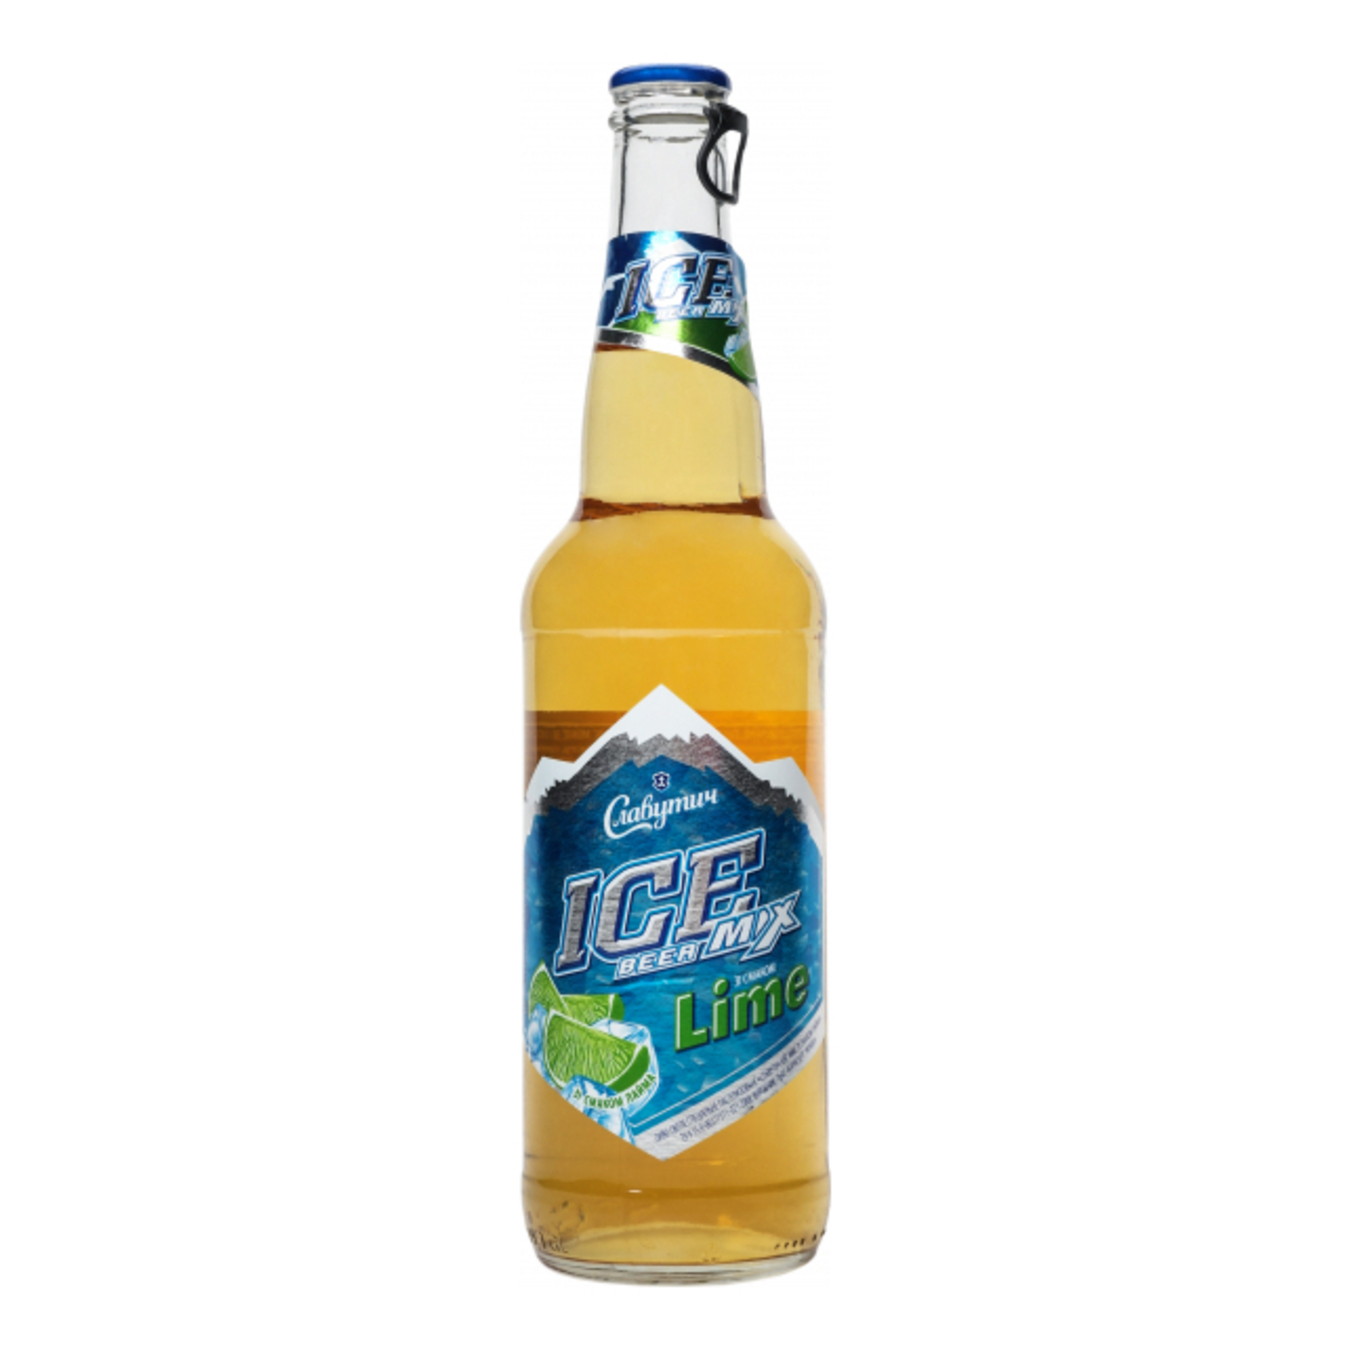 Пиво Славутич Ice Mix светлое со вкусом Лайма 3,5% 0,5л